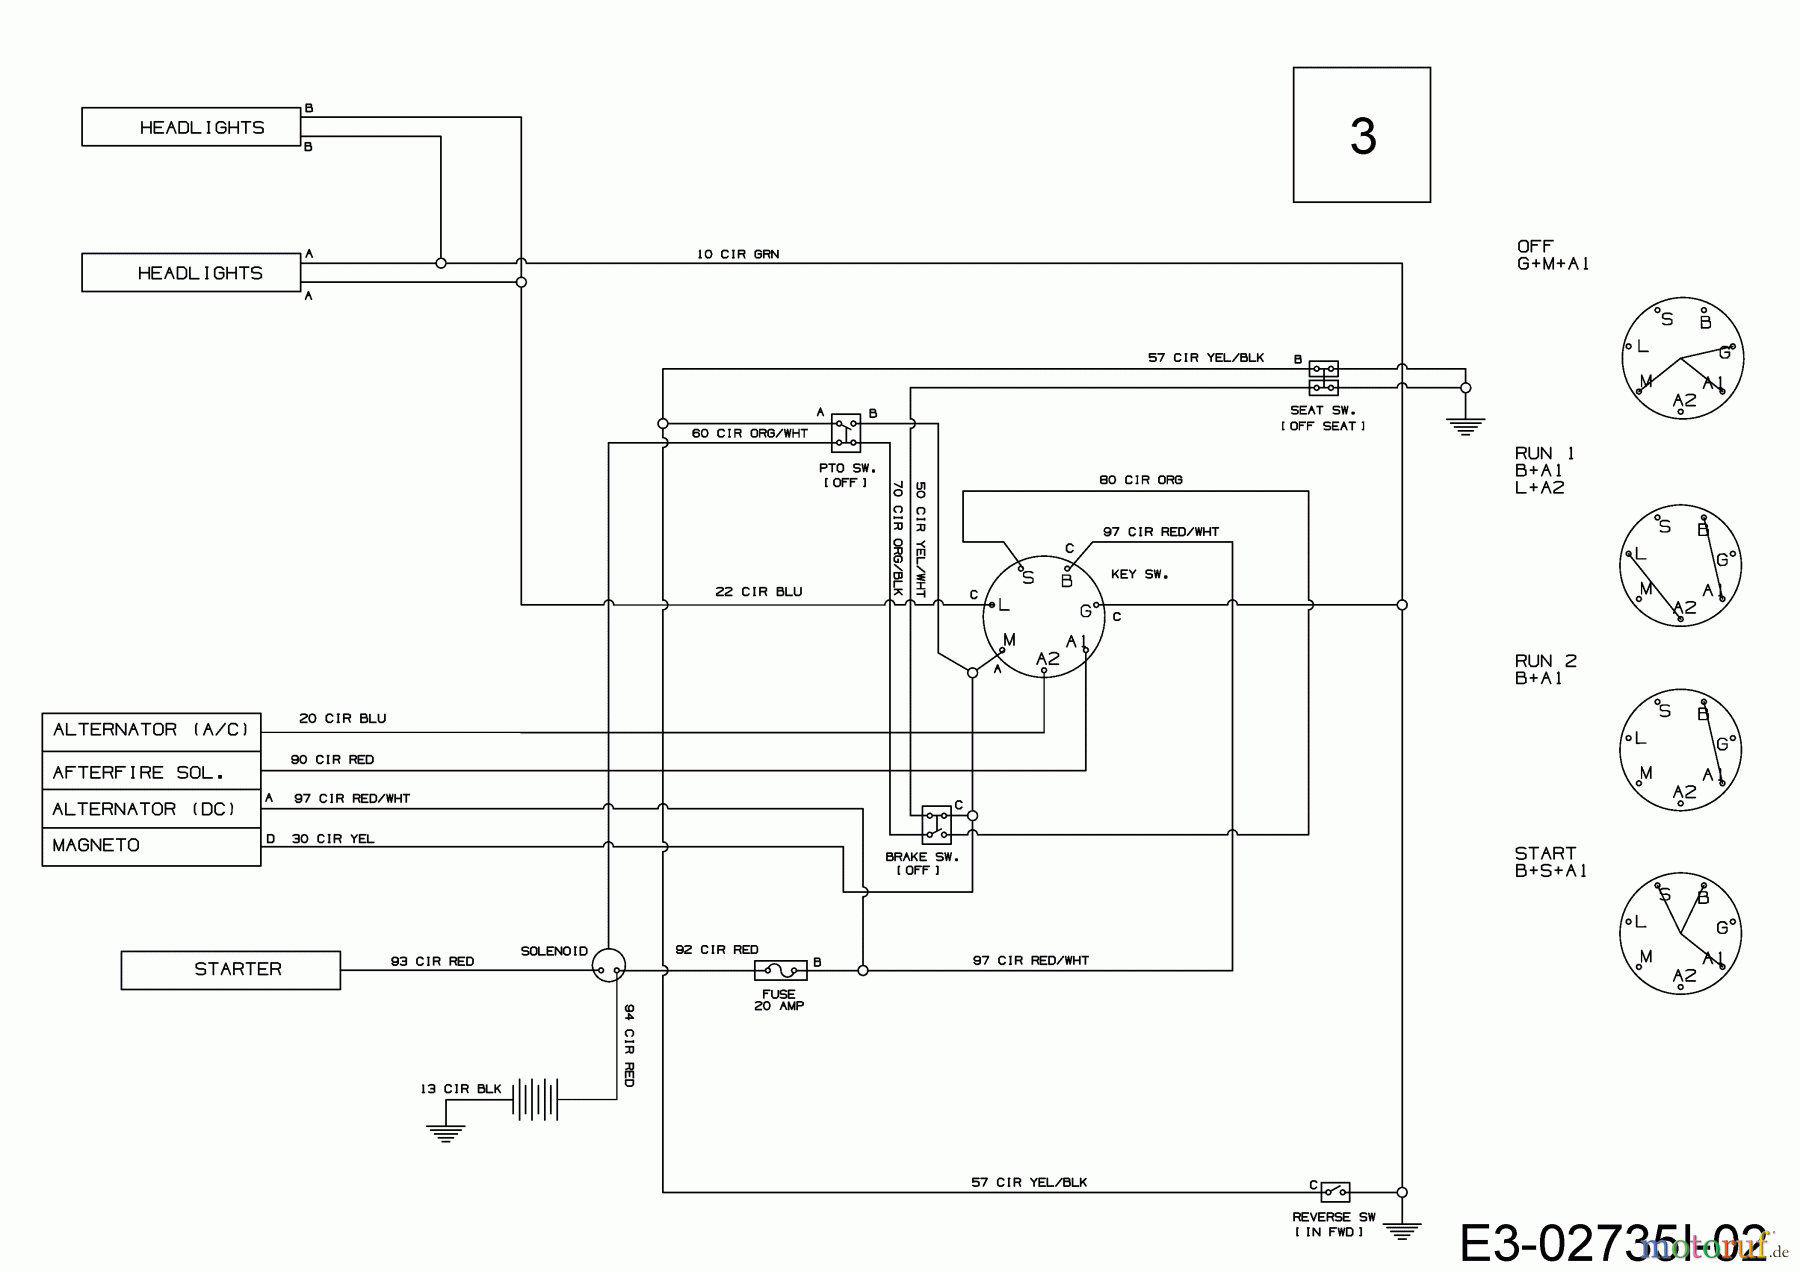  Cmi Lawn tractors 96-125 13IH765F620  (2019) Wiring diagram